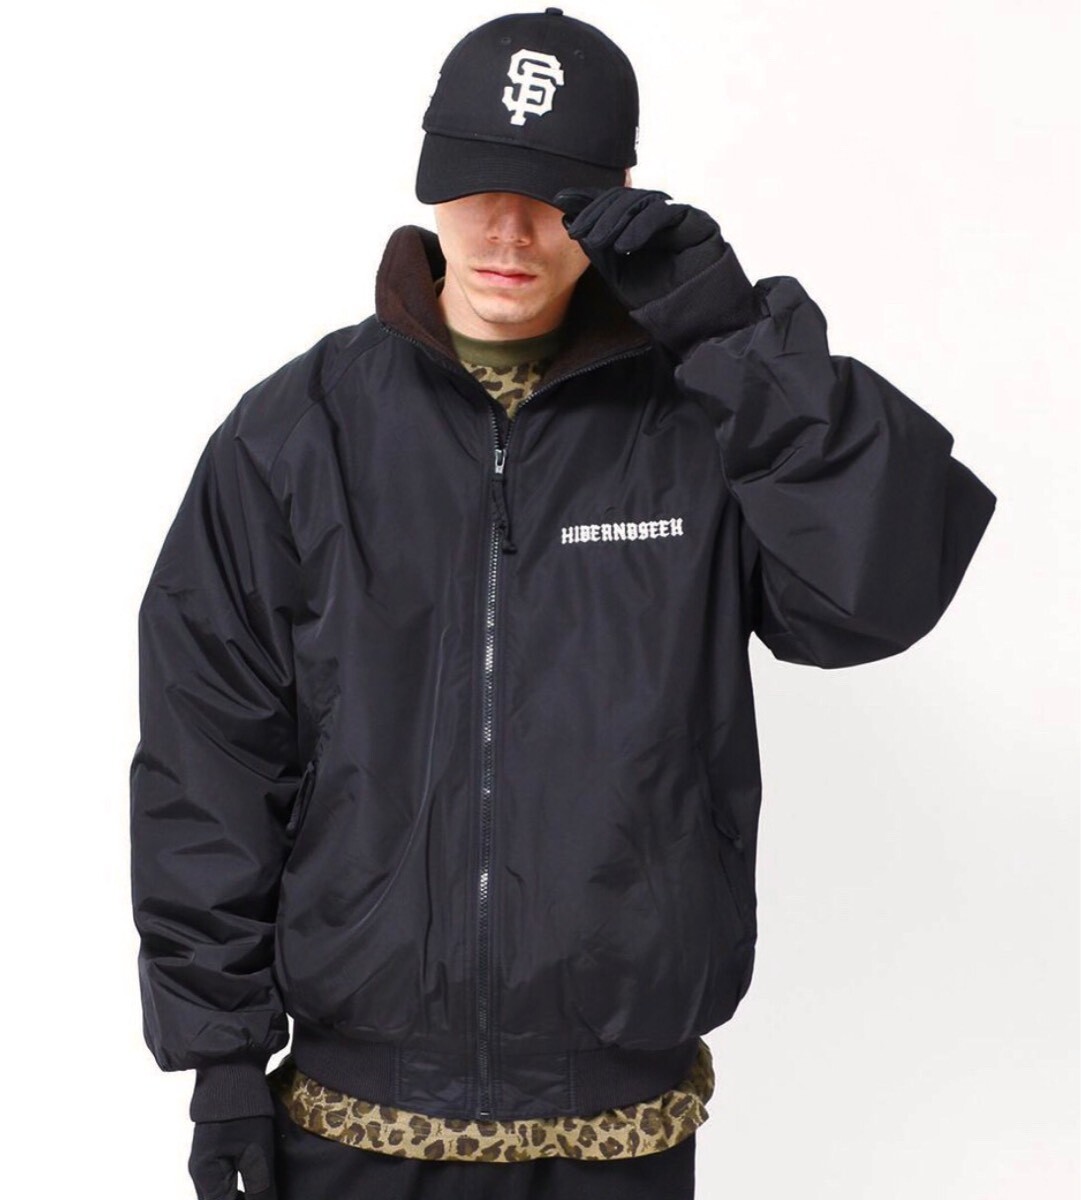 18000円全国激安 送料無料商品 HIDEANDSEEK nylon zip jacket xl black